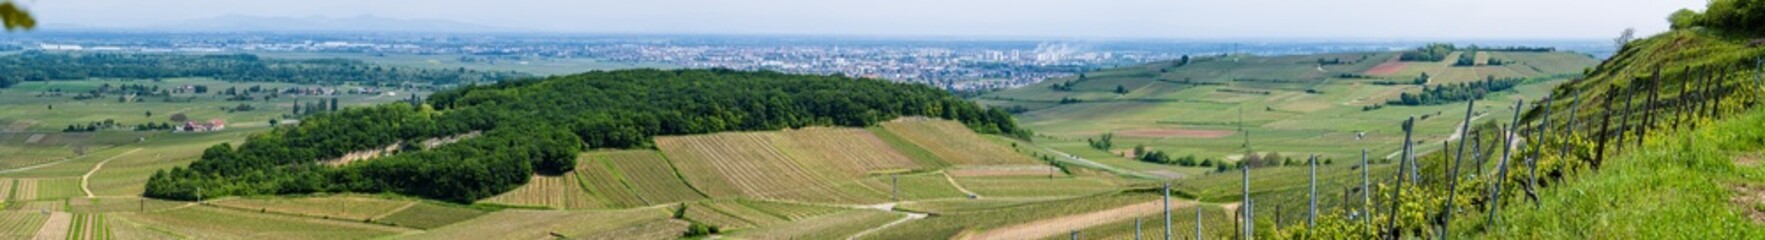 La colline du Dorfbourg et ses traces du passé : L'ancienne carrière du Florimont se fond dans la végétation boisée, CeA, Alsace, Grand Est, France